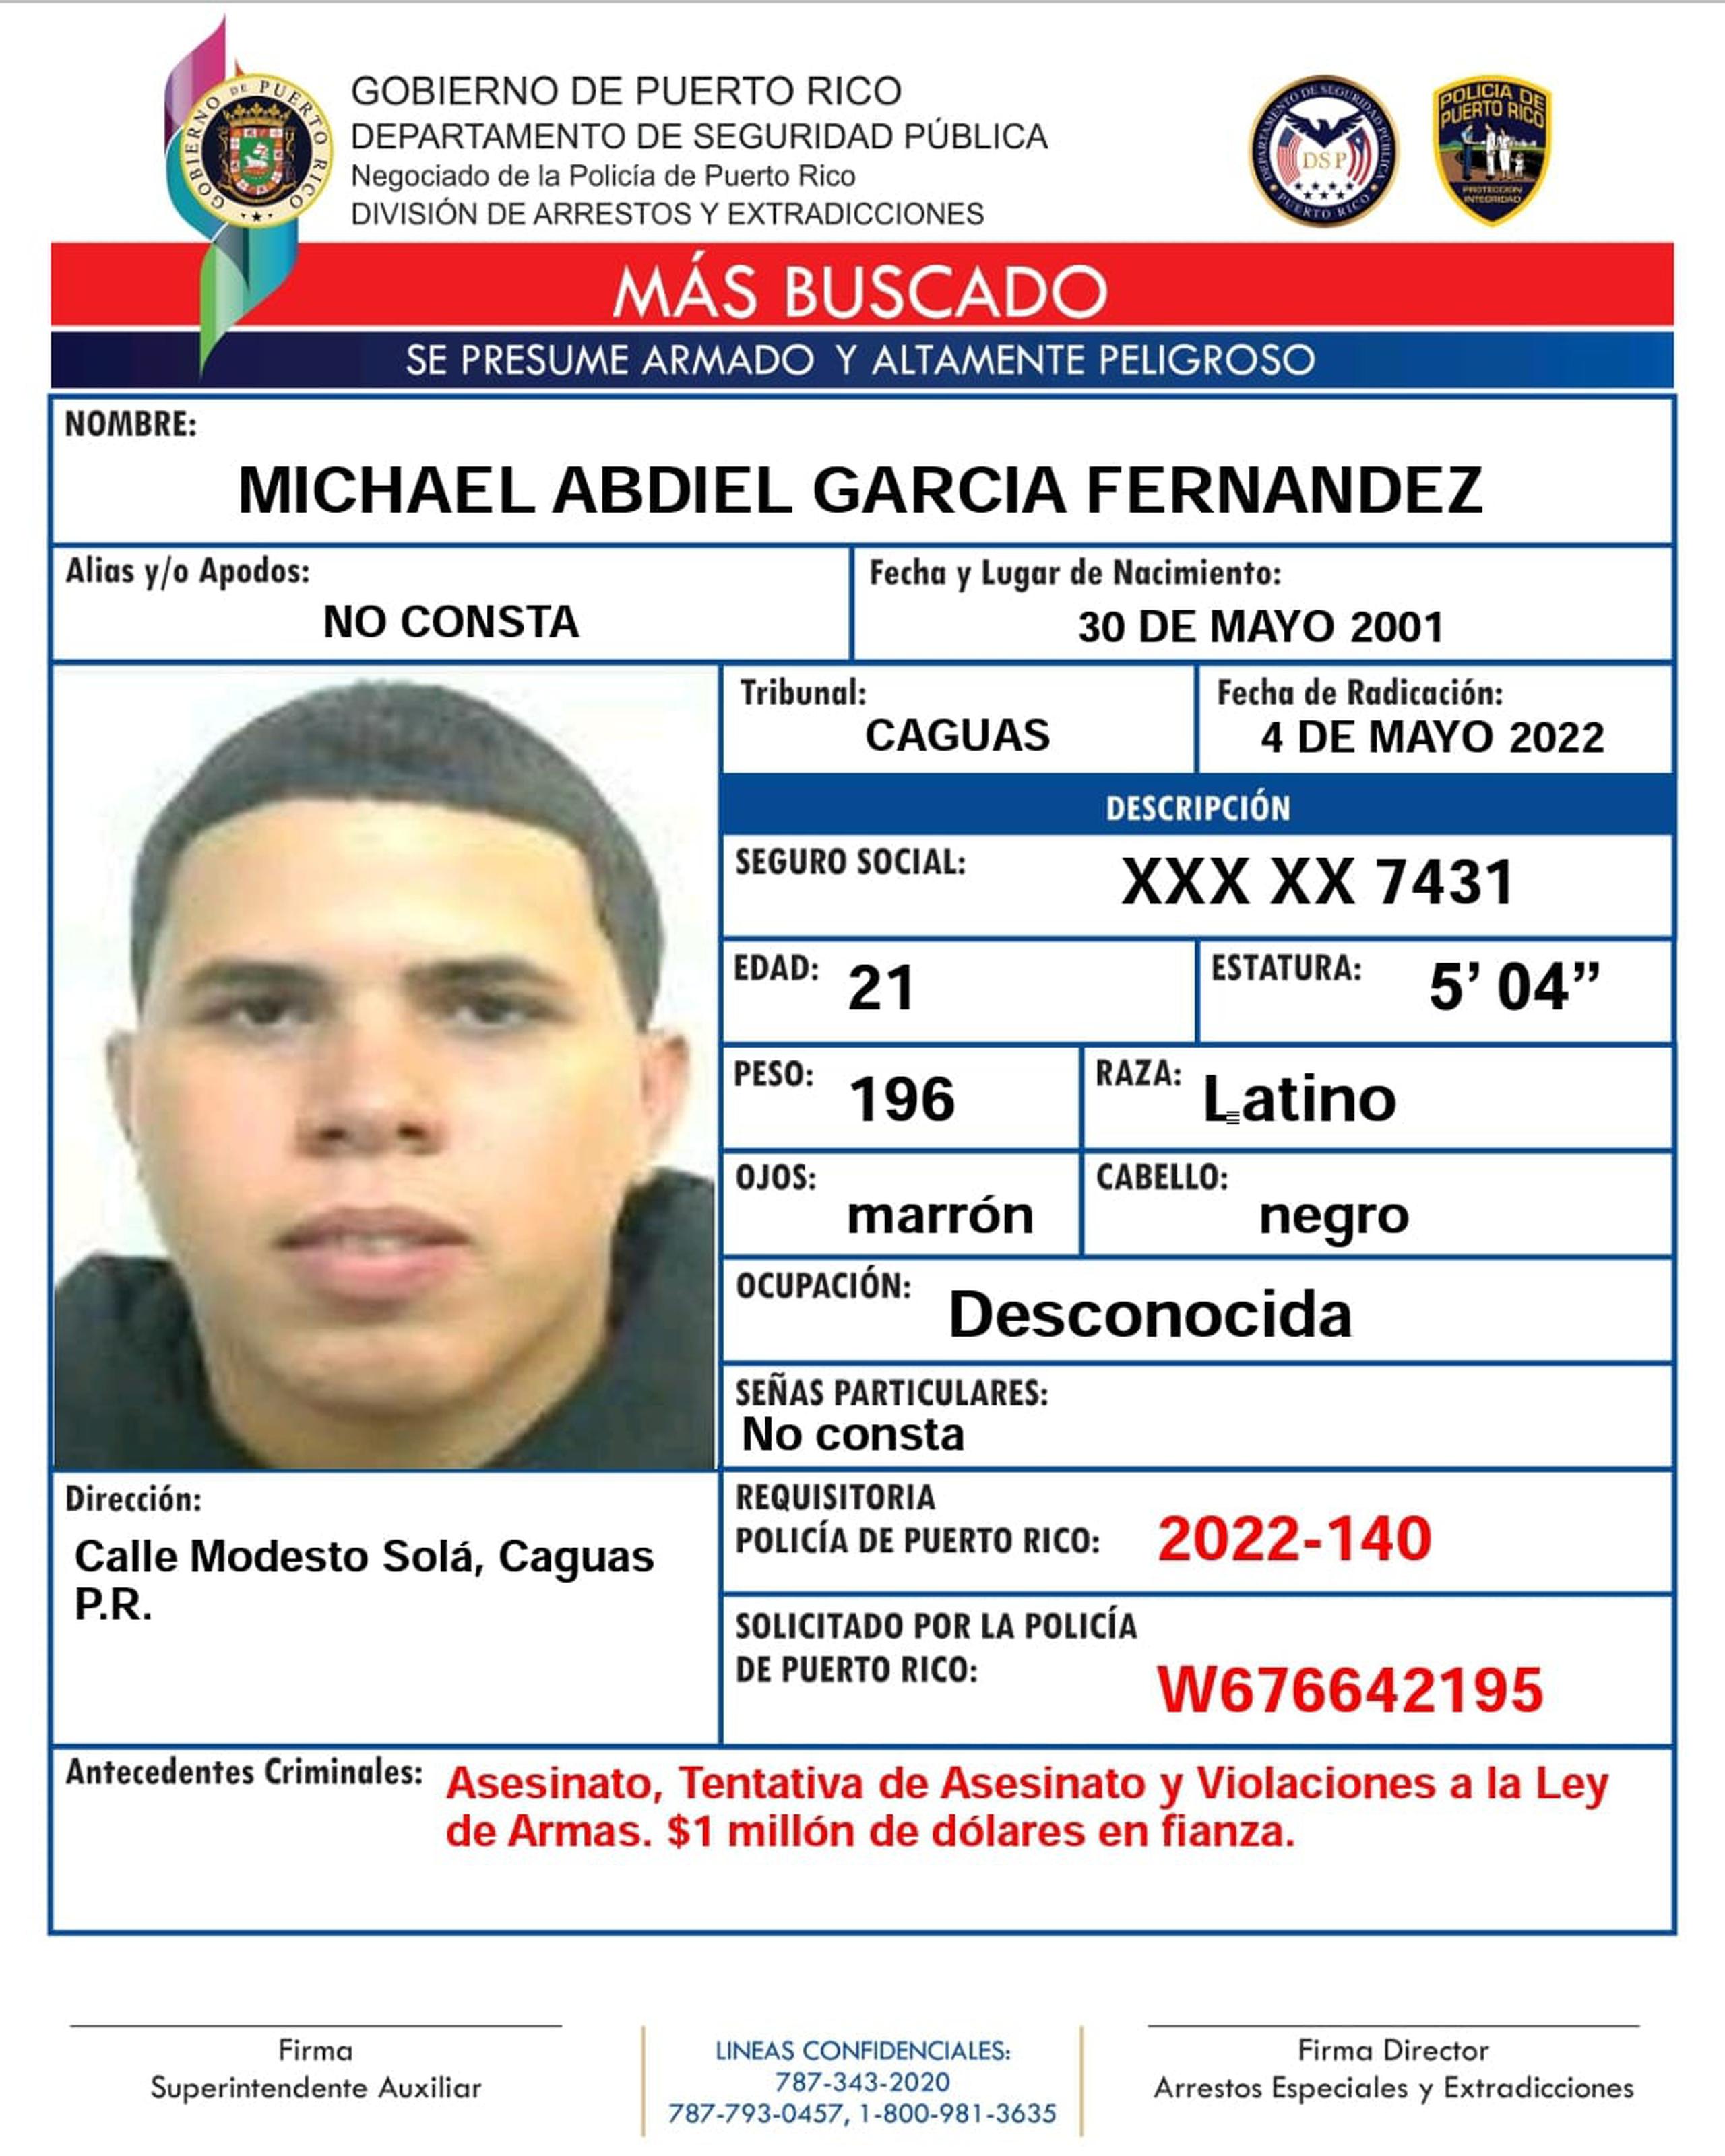 Michael Abdiel García Fernández y su hermano fueron acusados en ausencia por cargos de asesinato en primer grado, tentativa de asesinato y violación a la Ley de Armas.